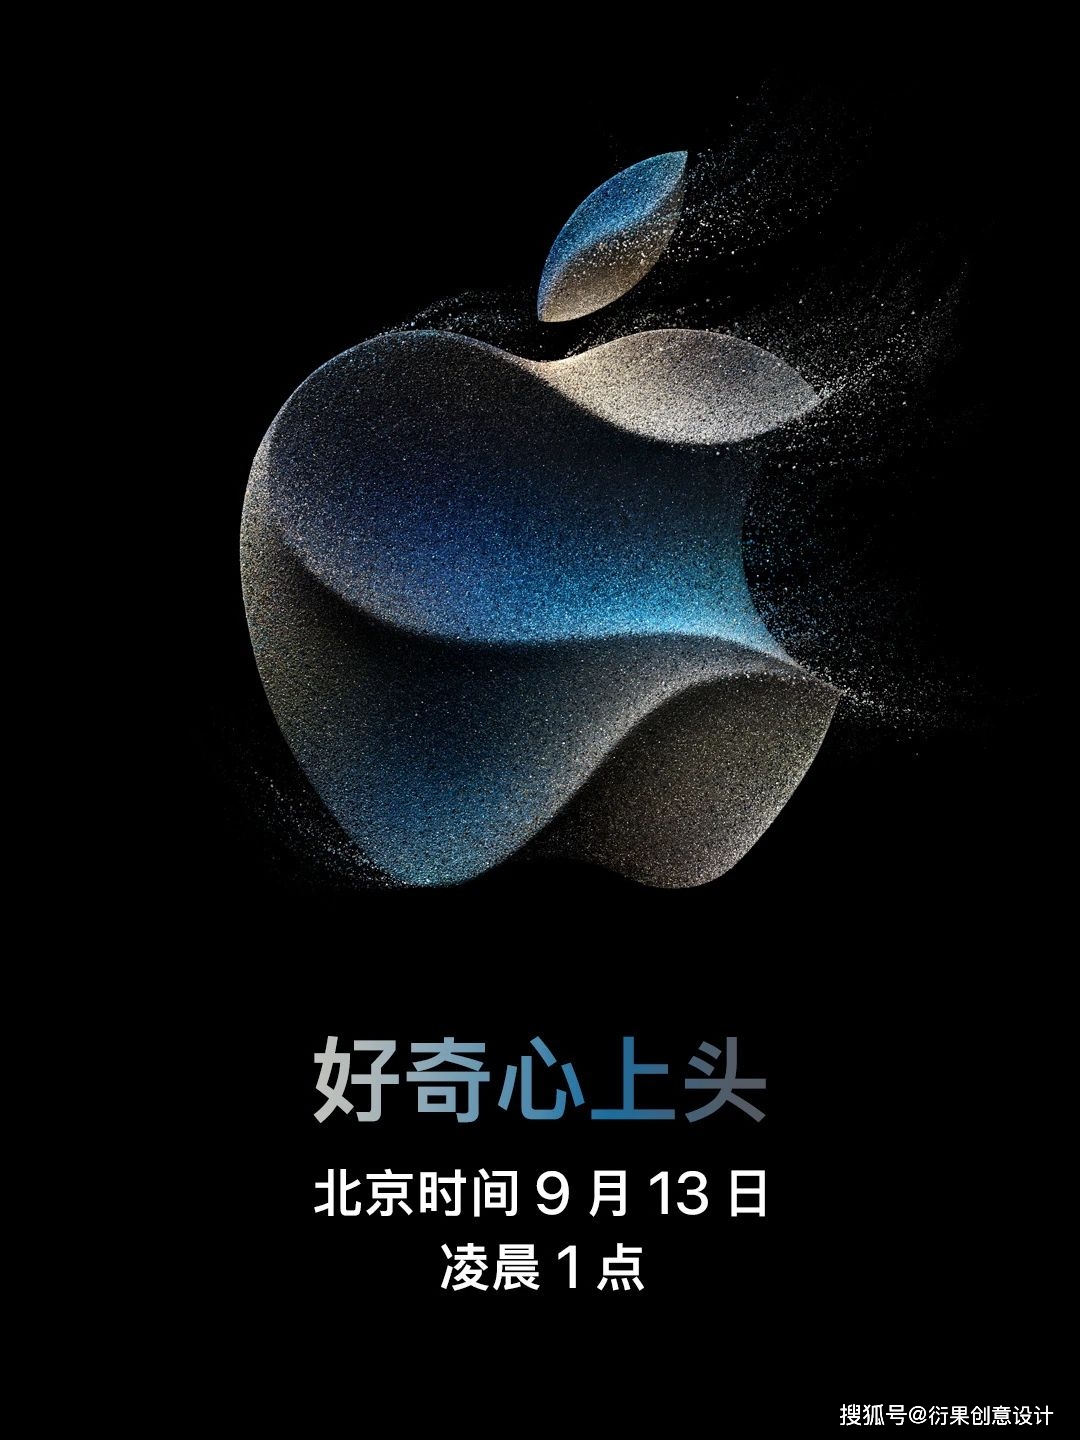 苹果2023秋季发布会logo亮相,流沙般五彩斑斓的黑真很nice!